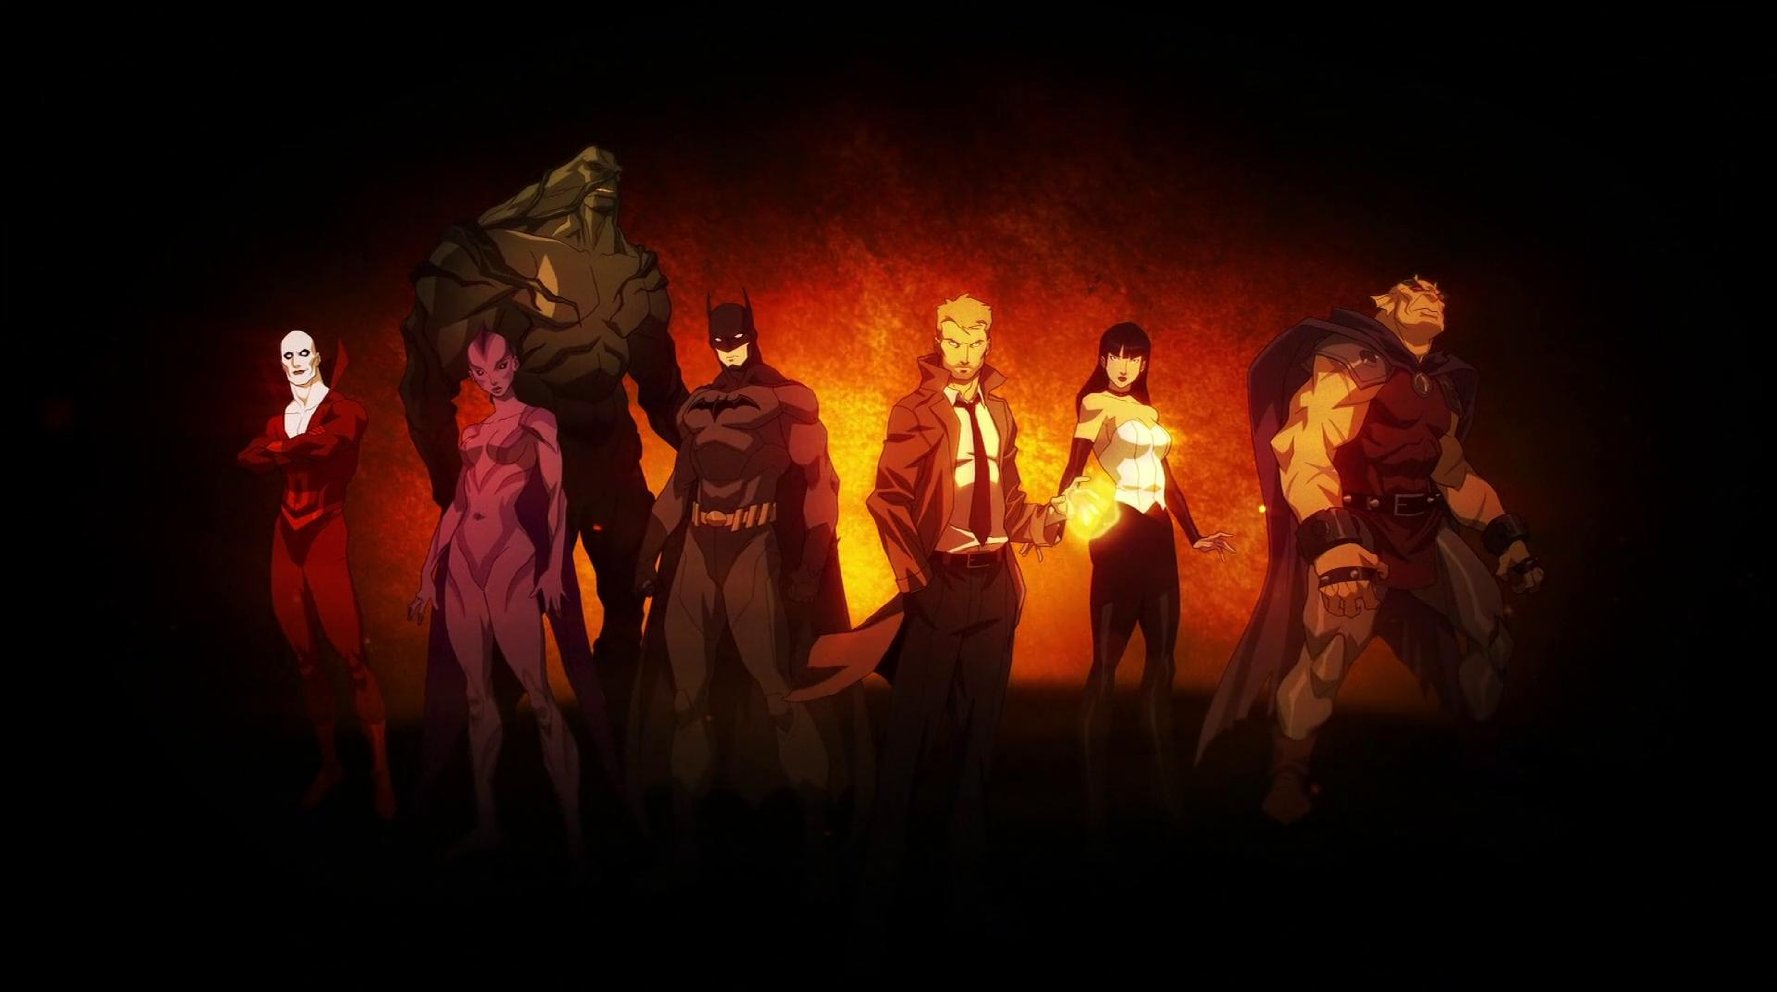 Batman Meets Constantine in Justice League Dark - Zombies in My Blog